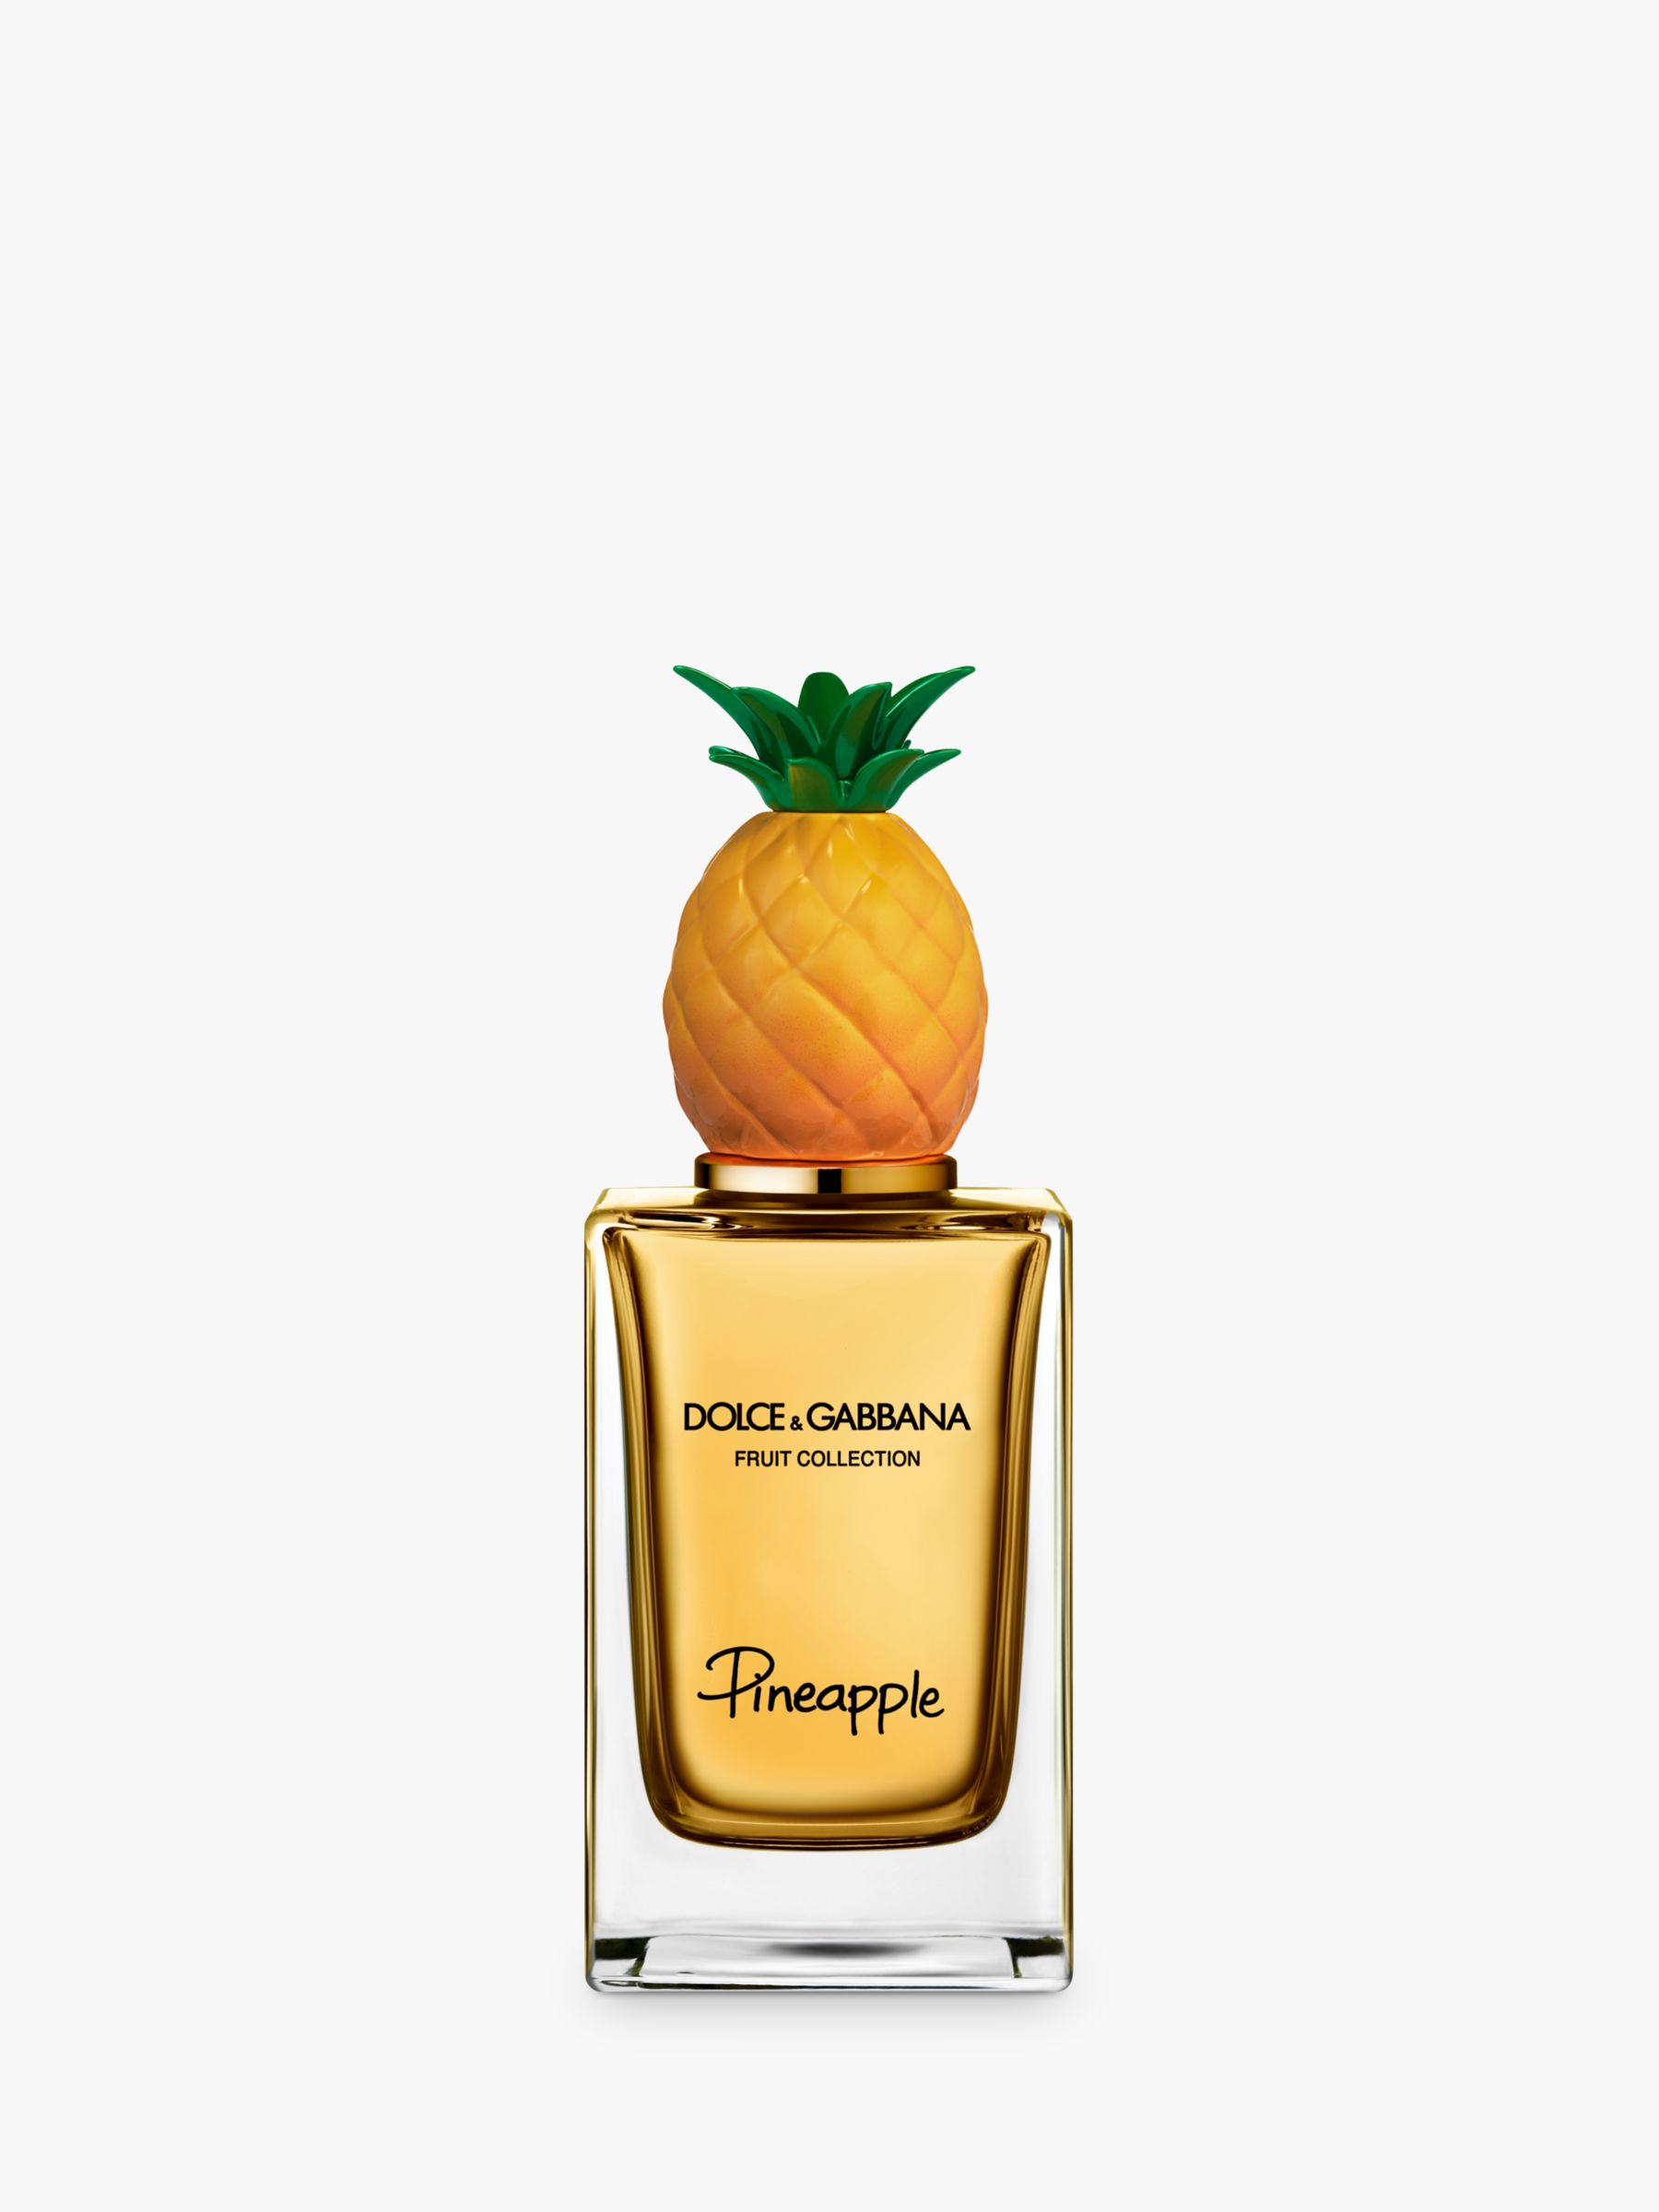 Dolce & Gabbana Fruit Collection Pineapple Eau de Toilette, 150ml at ...